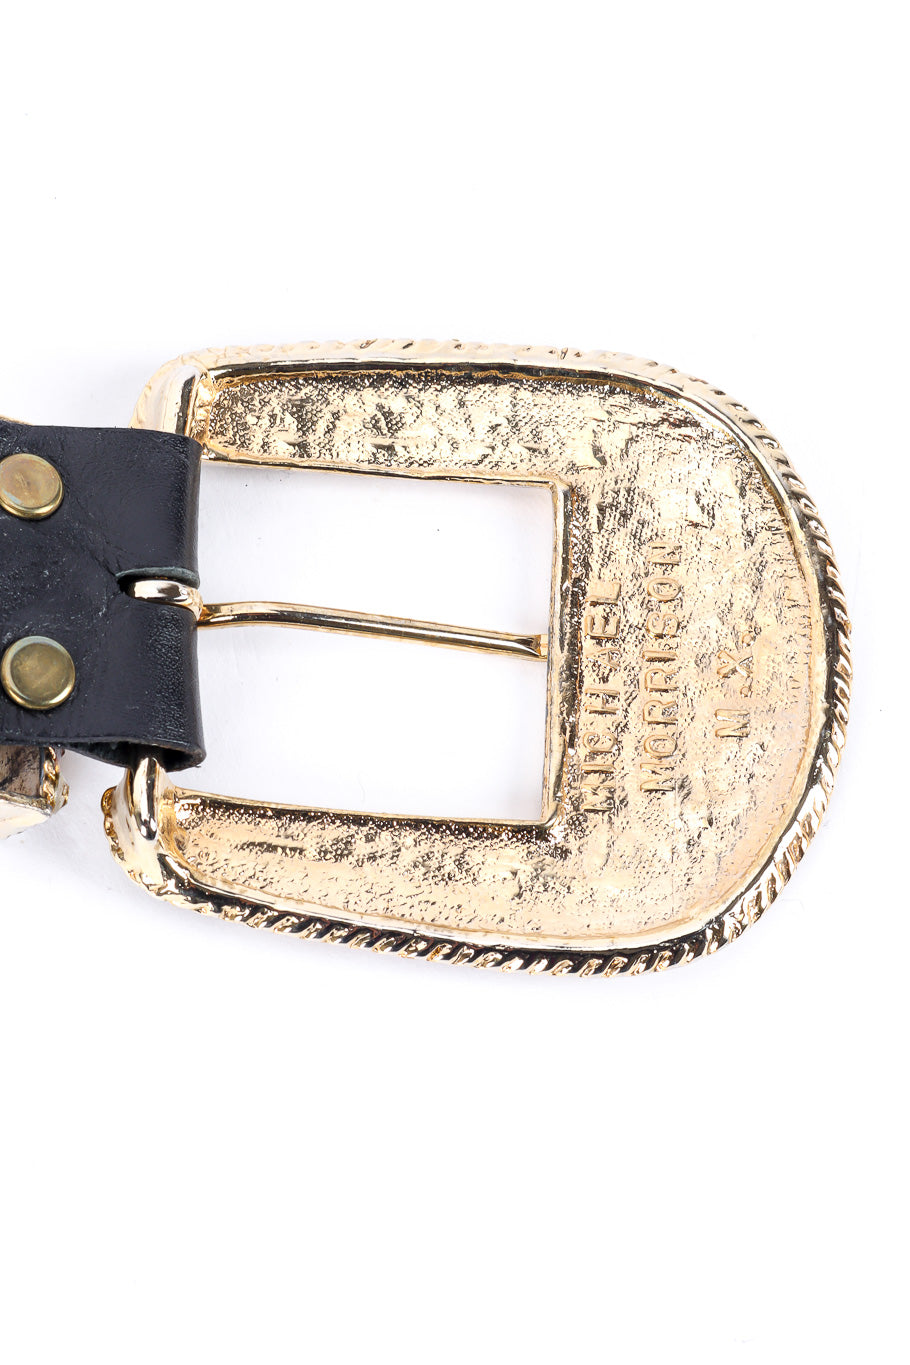 Michael Morrison crystal studded leather belt designer name engraved @recessla